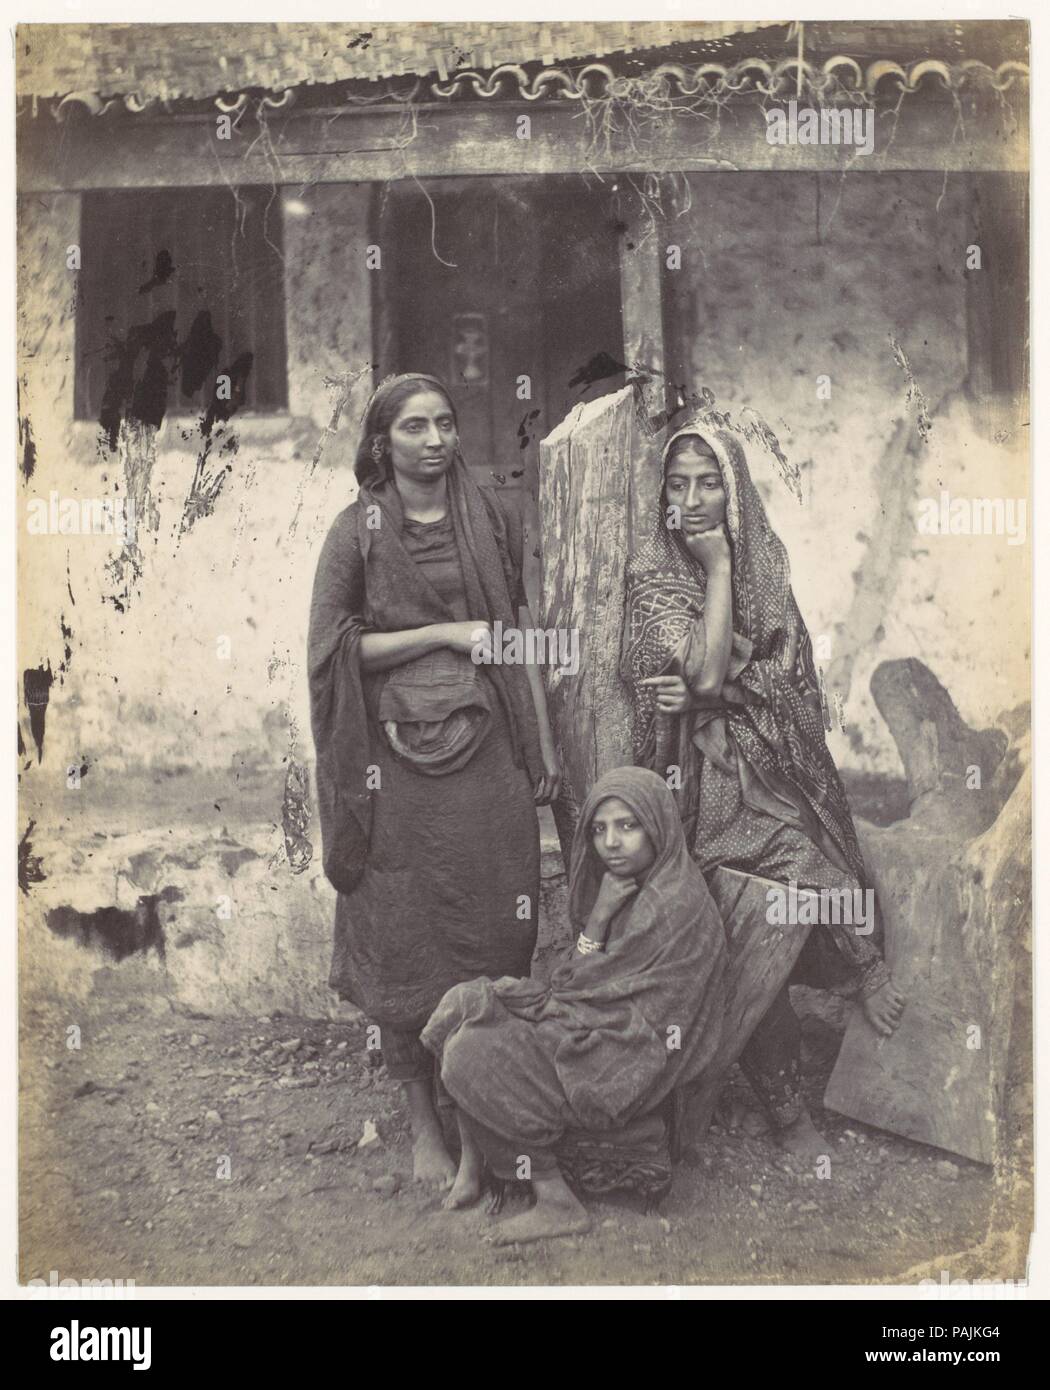 [Drei indische Frauen]. Artist: Francis Frith (British, Chesterfield, Derbyshire 1822-1898 Cannes, Frankreich). Datum: 1870. Museum: Metropolitan Museum of Art, New York, USA. Stockfoto